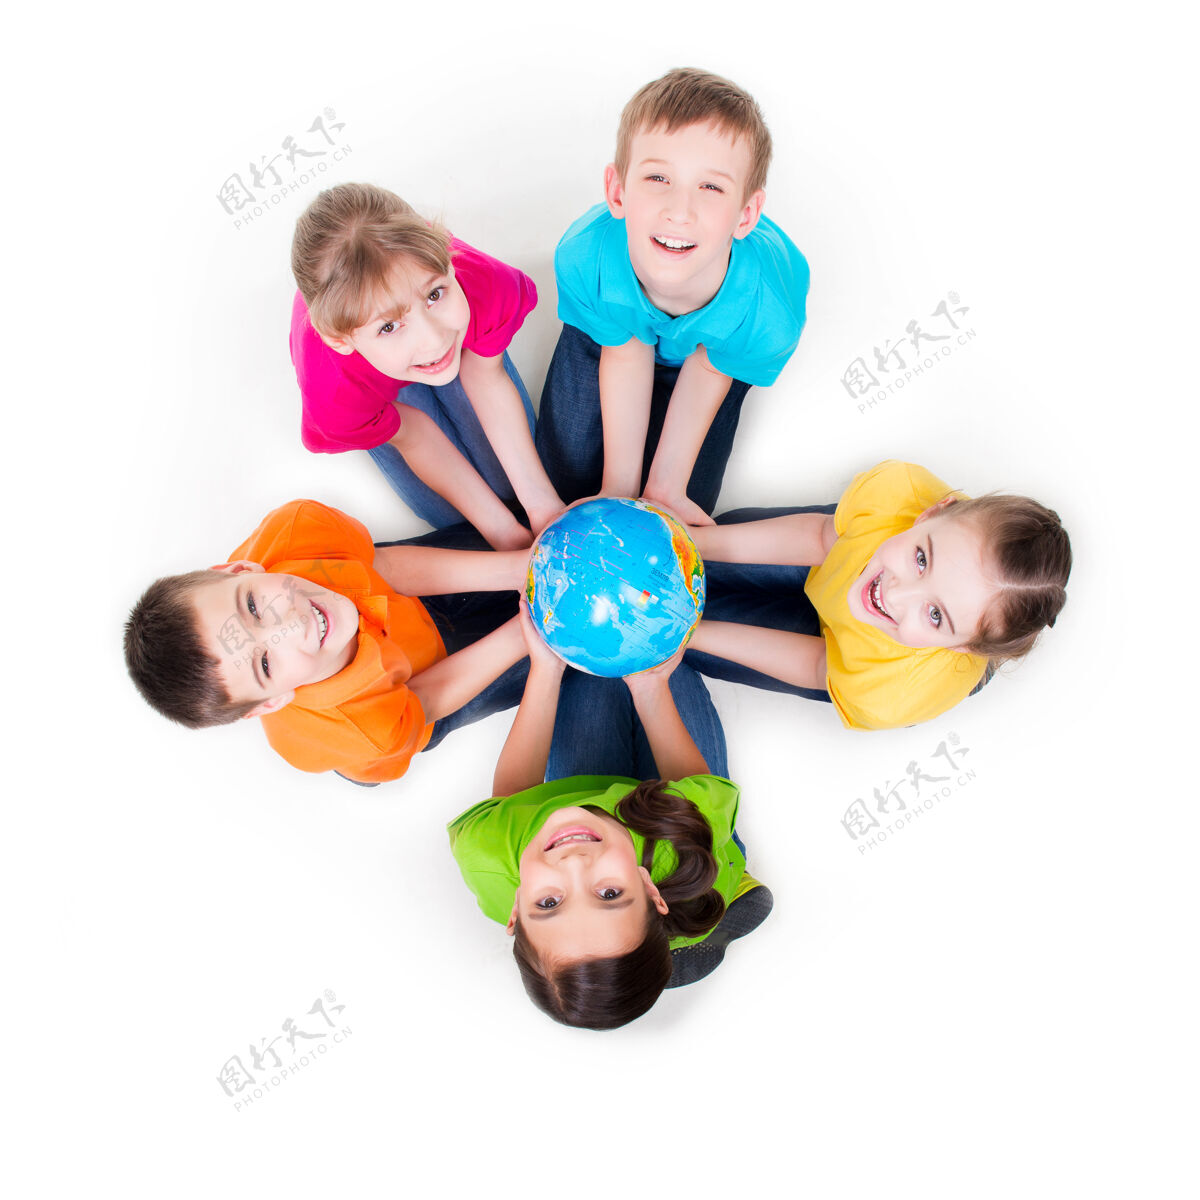 男孩一群微笑的孩子坐在地板上围成一个圈 手里拿着一个地球仪——孤立地站在白色地板上肖像年轻五